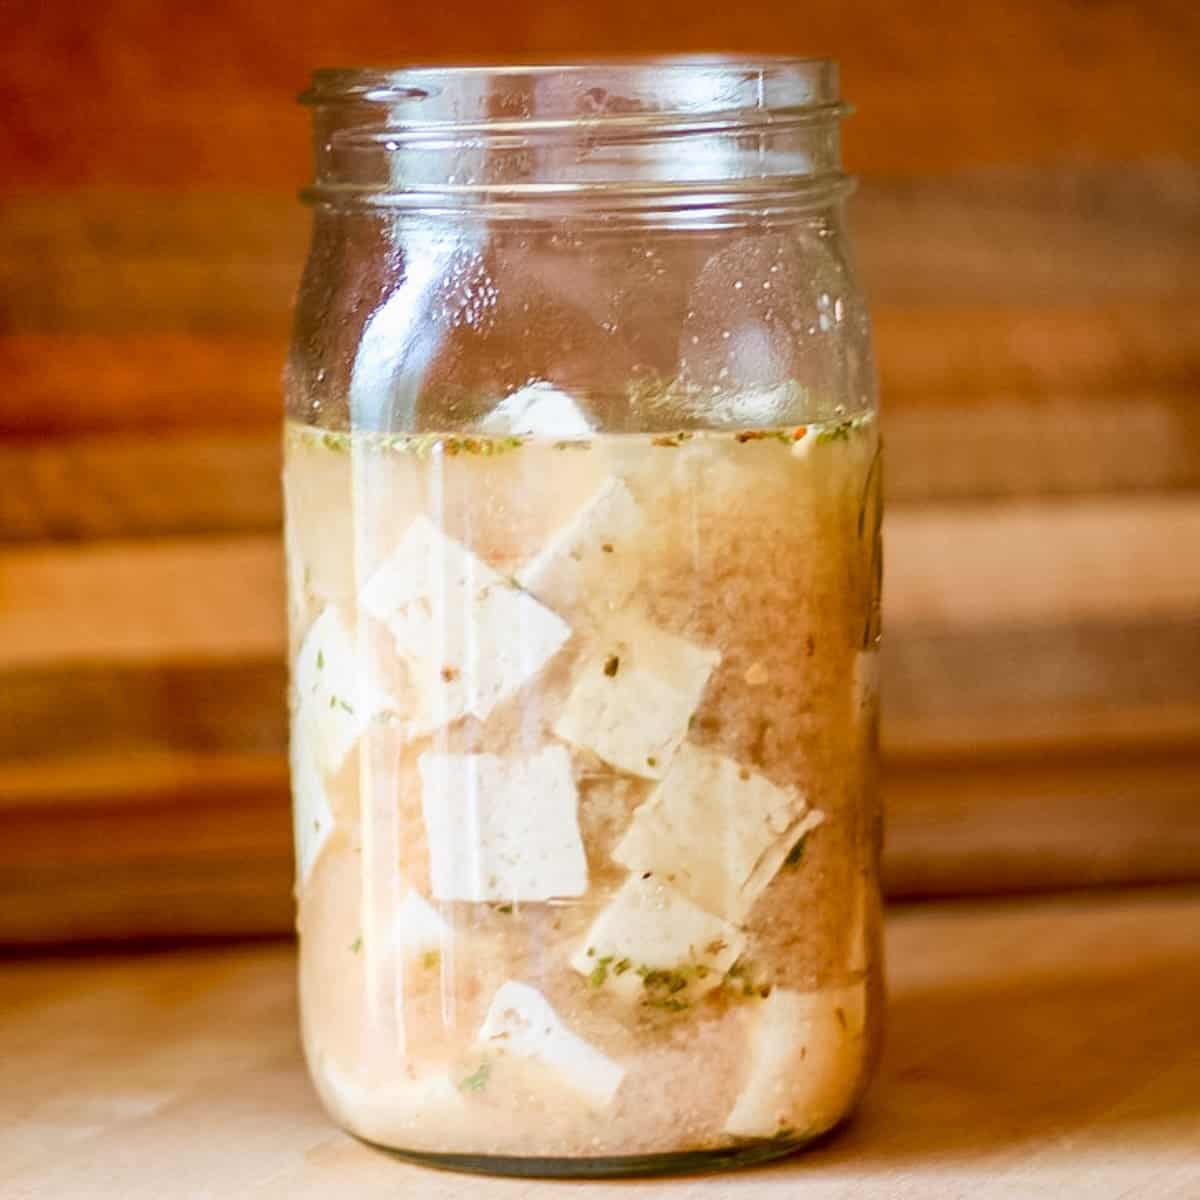 cubes of tofu feta in a glass jar